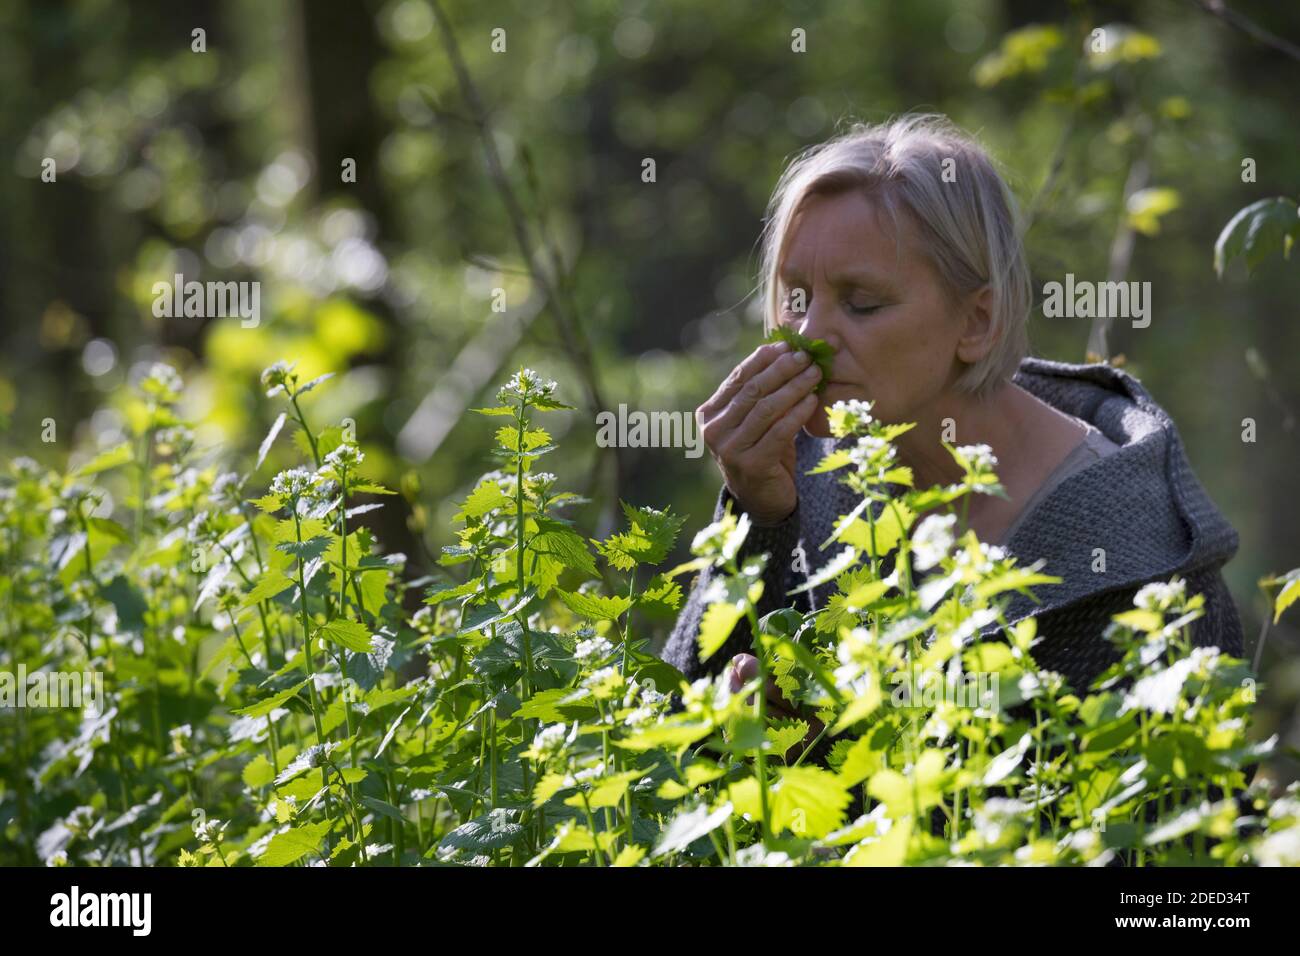 Mostaza de ajo, ajo de hedge, Jack-by-the-Hedge (Alliaria petiolata), mujer cosechando mostaza de ajo en un bosque, oliendo a las hojas, Alemania Foto de stock